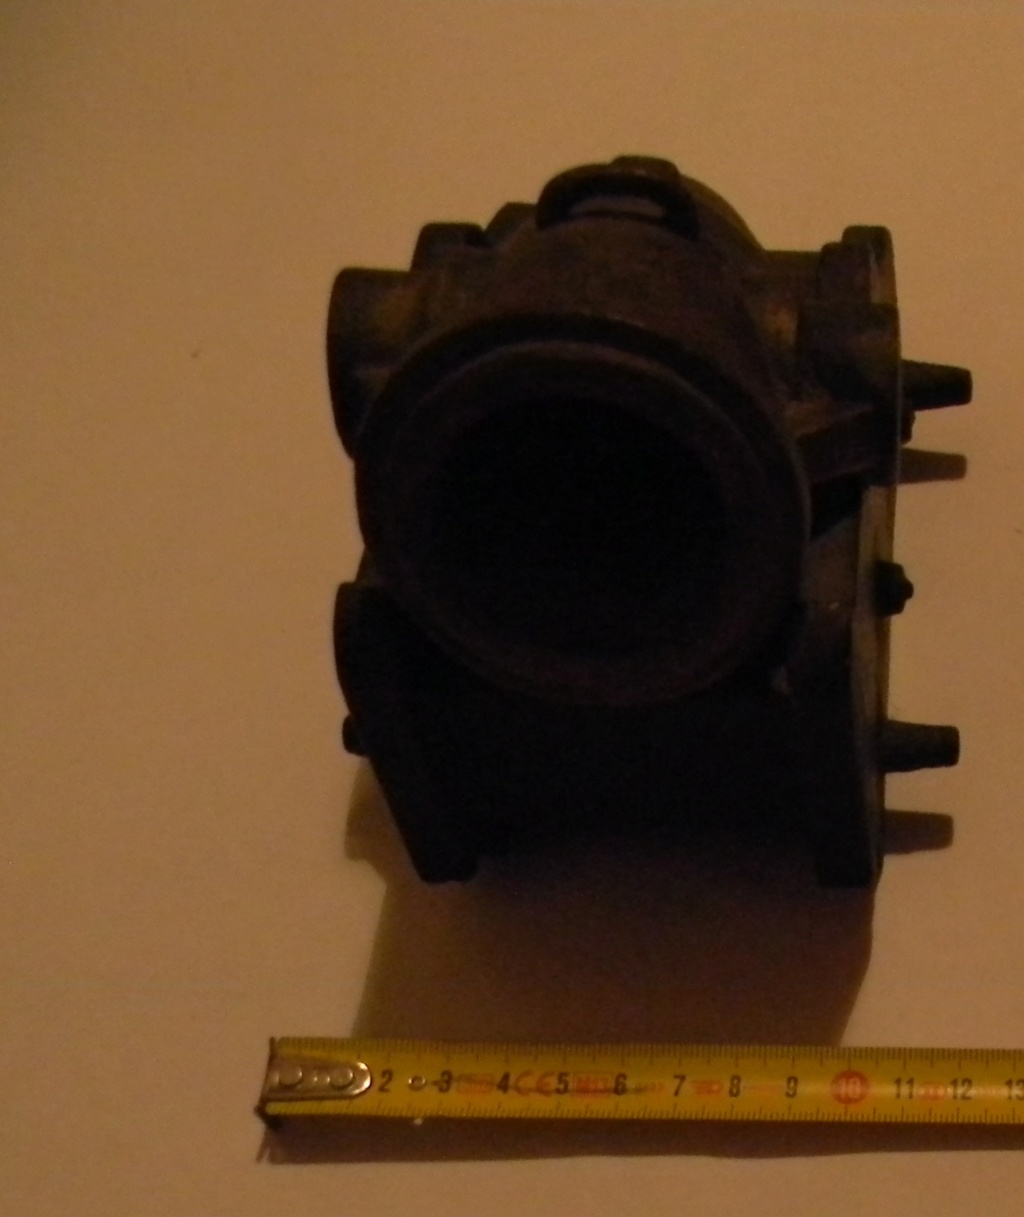 Le mortier Louis-philippe, ses projectiles (bombe à cornes,..)  Dscn8310